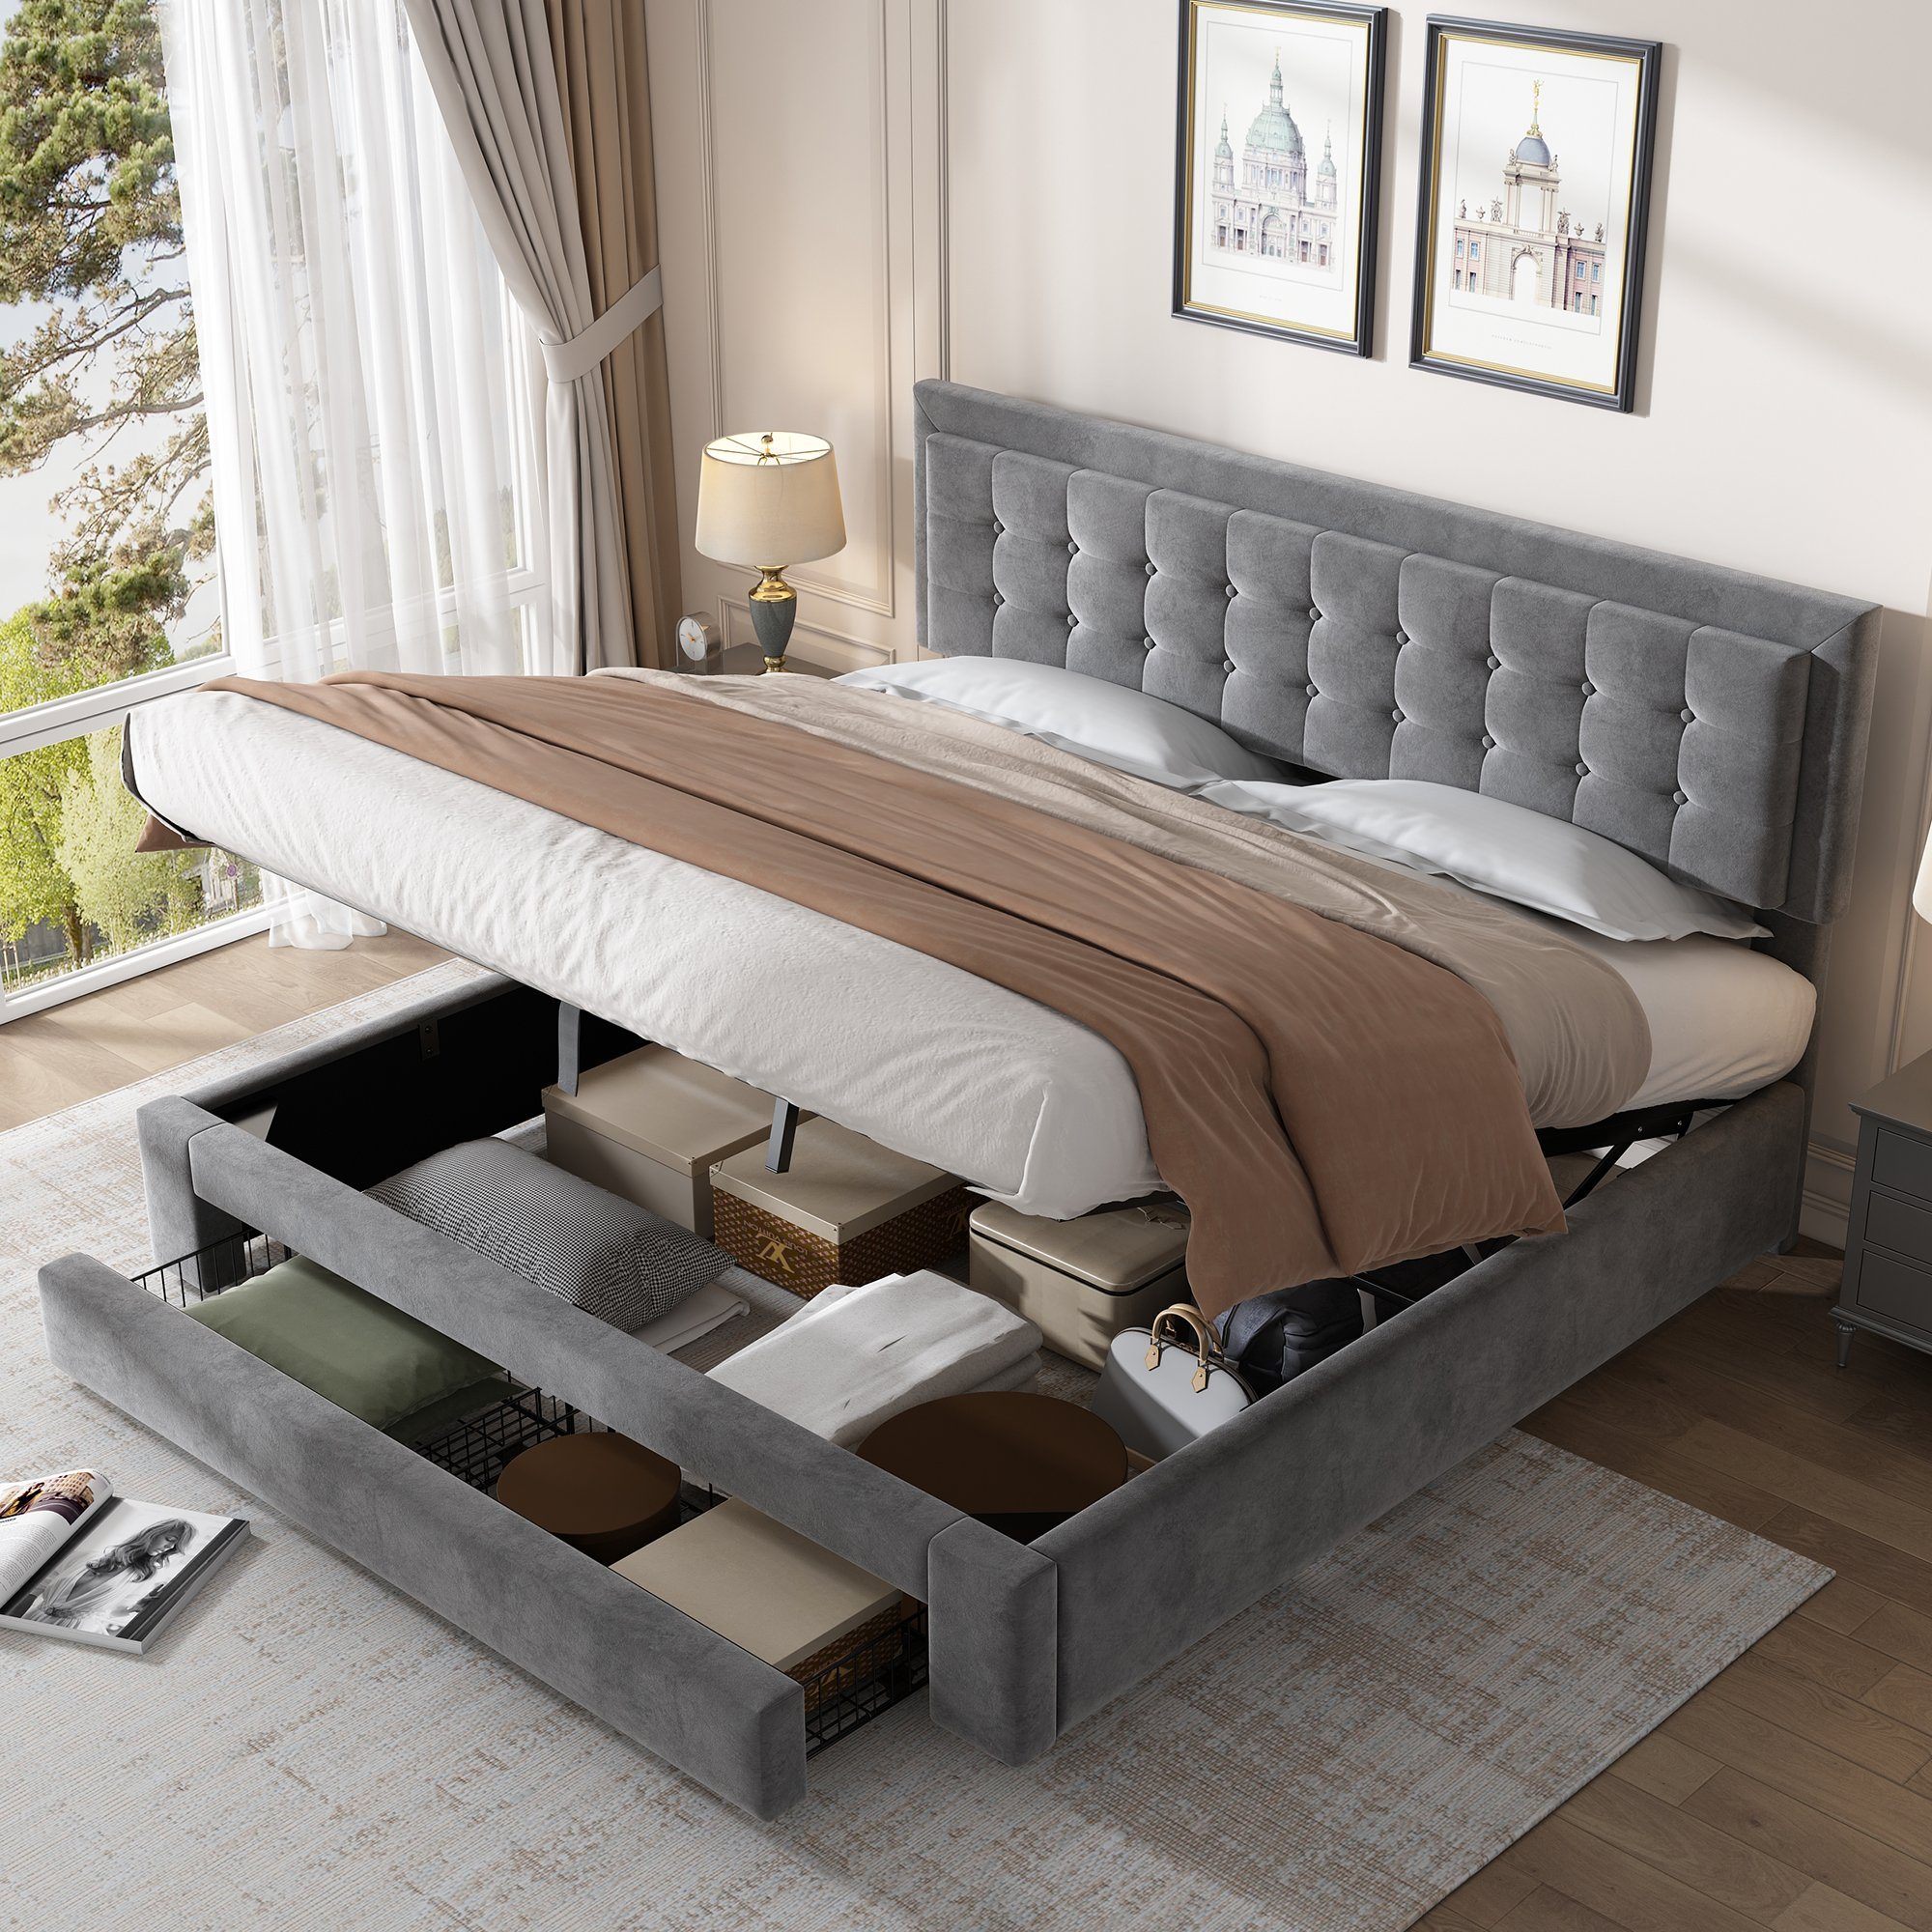 SOFTWEARY Polsterbett Doppelbett mit Lattenrost, Bettkasten und Schubladen (180x200 cm), Kopfteil höhenverstellbar, Samt grau